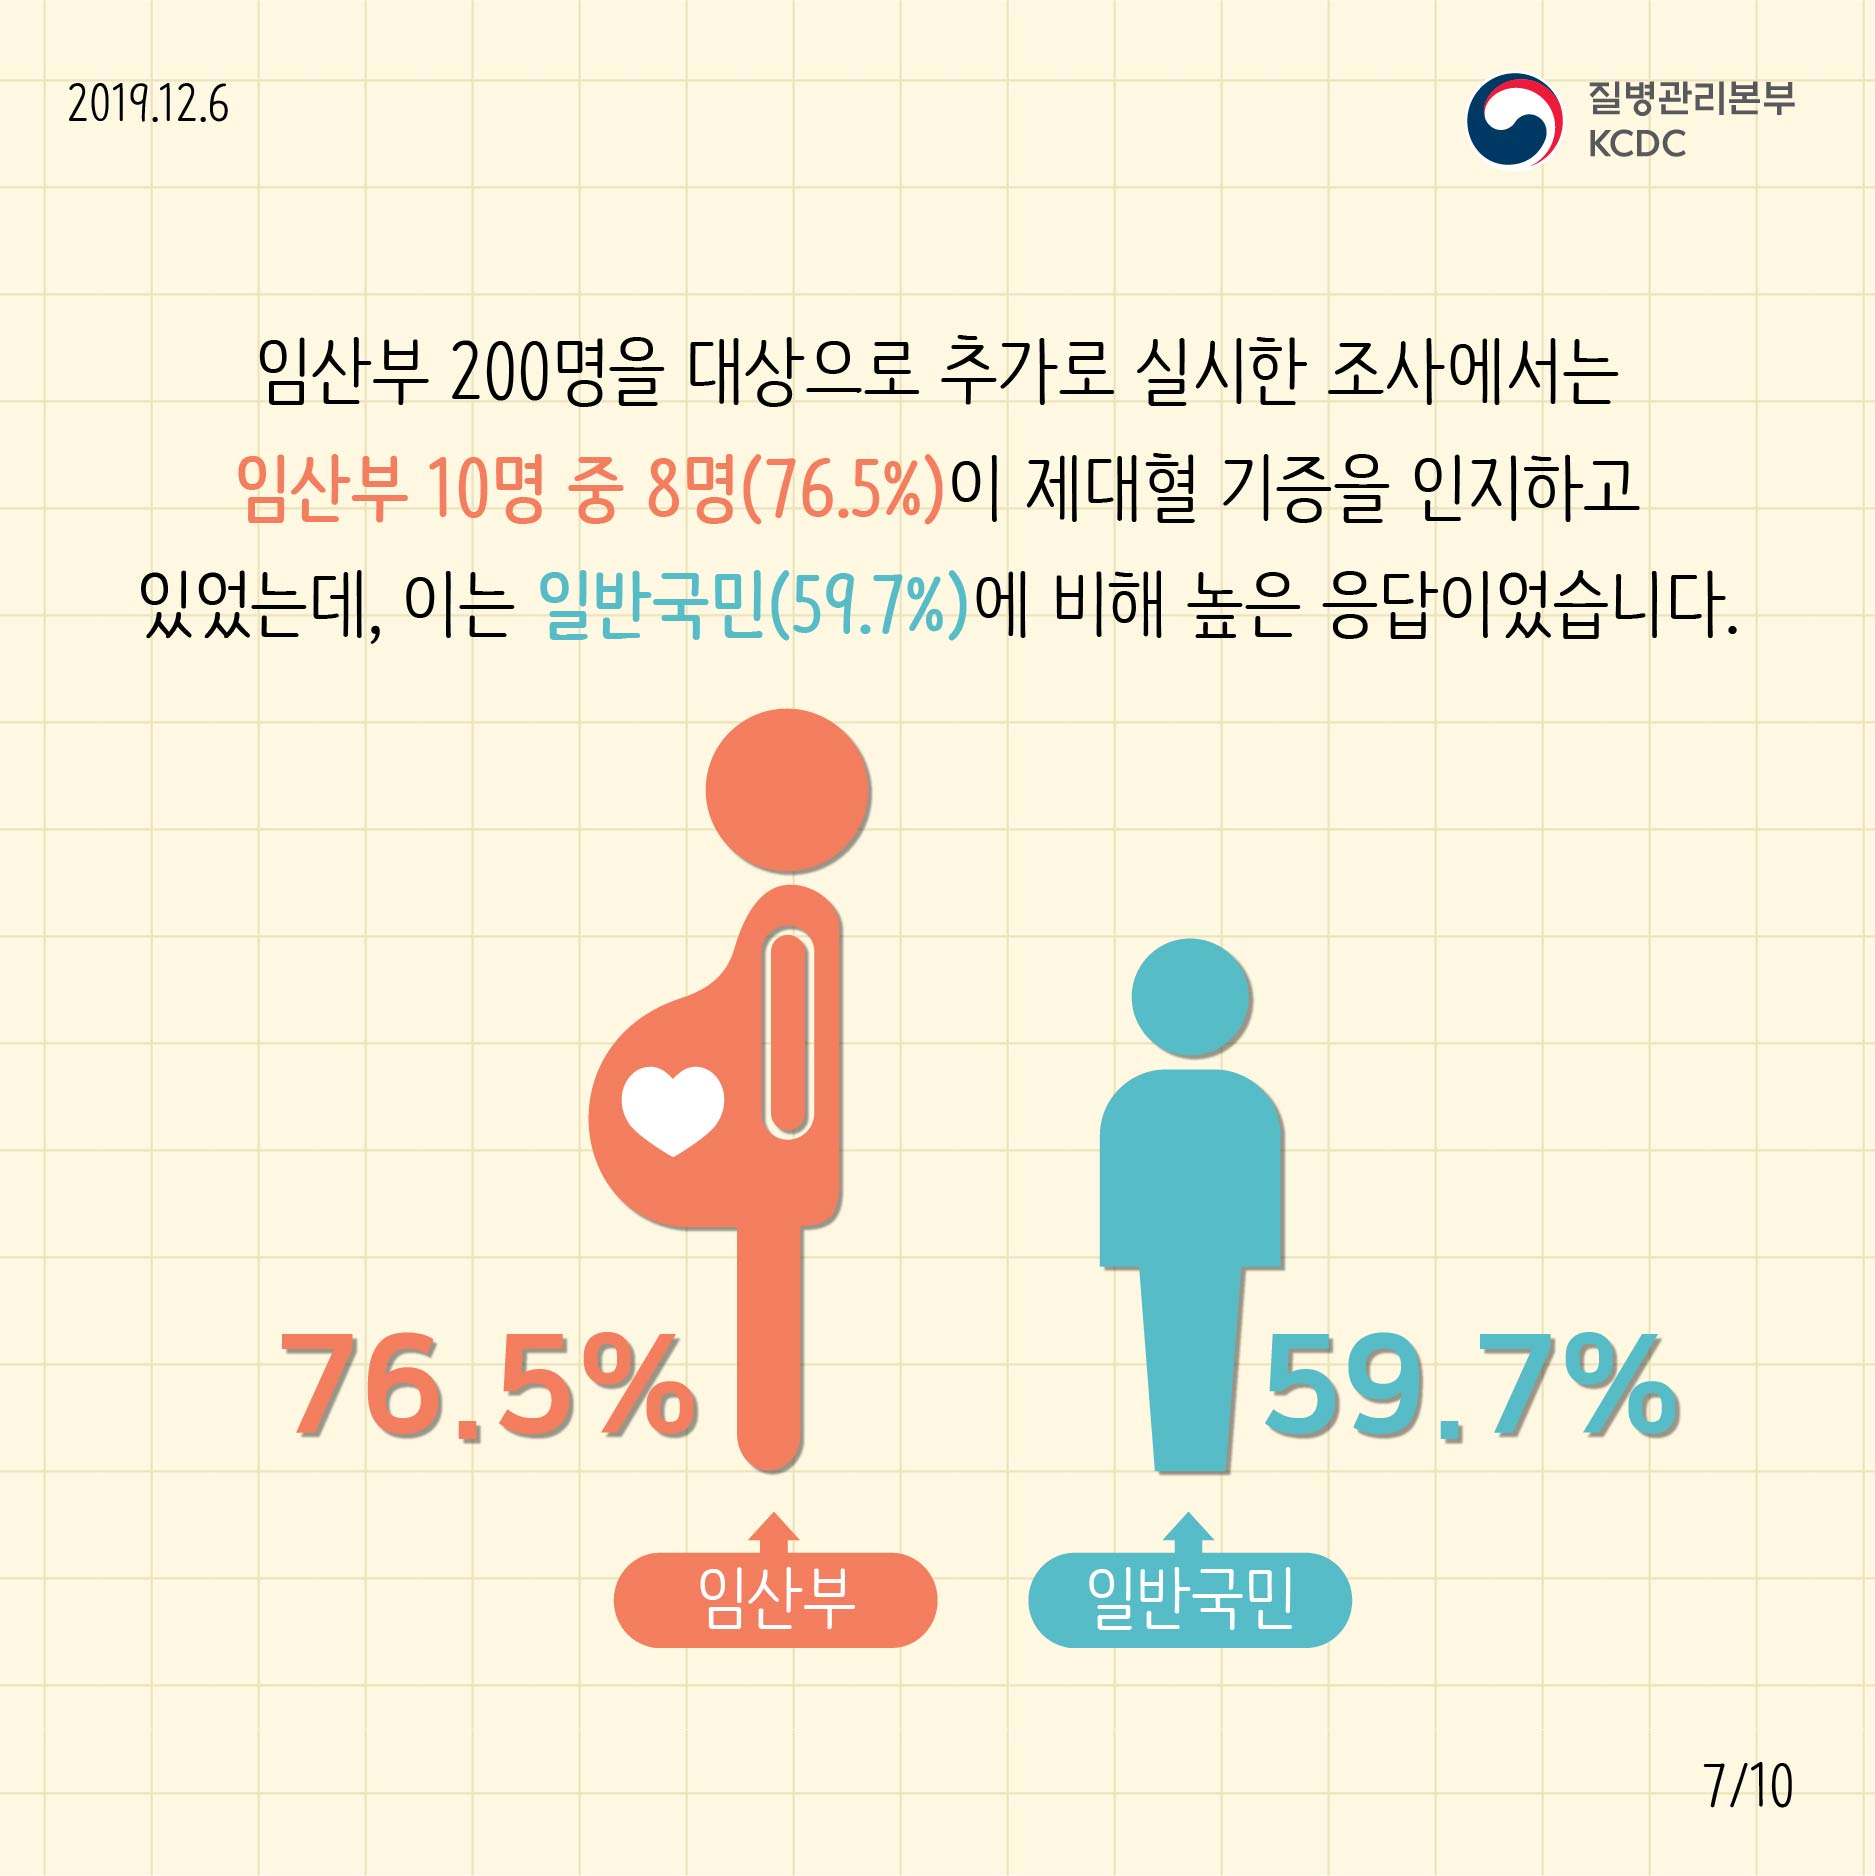 임산부 200명을 대상으로 추가로 실시한 조사에서는 임산부 10명 중 8명(76.5%)이 제대혈 기증을 인지하고 있었는데, 이는 일반국민(59.7%)에 비해 높은 응답이었습니다.